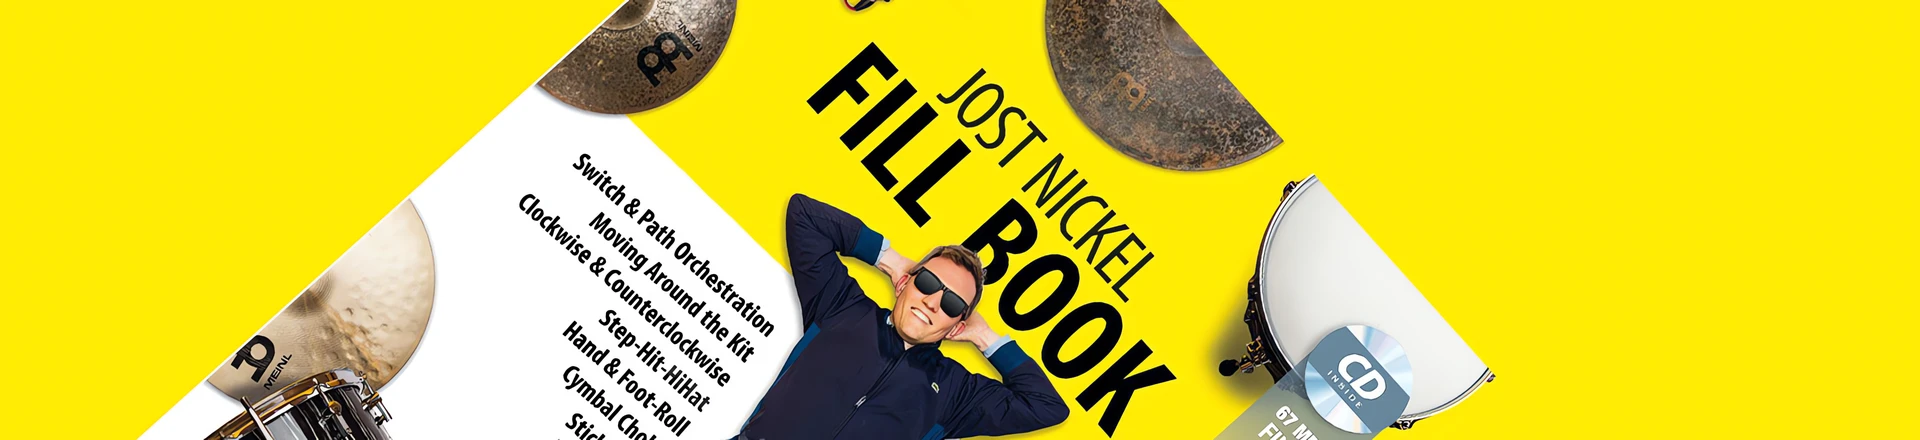 Jost Nickel Fill Book dostępna w języku angielskim